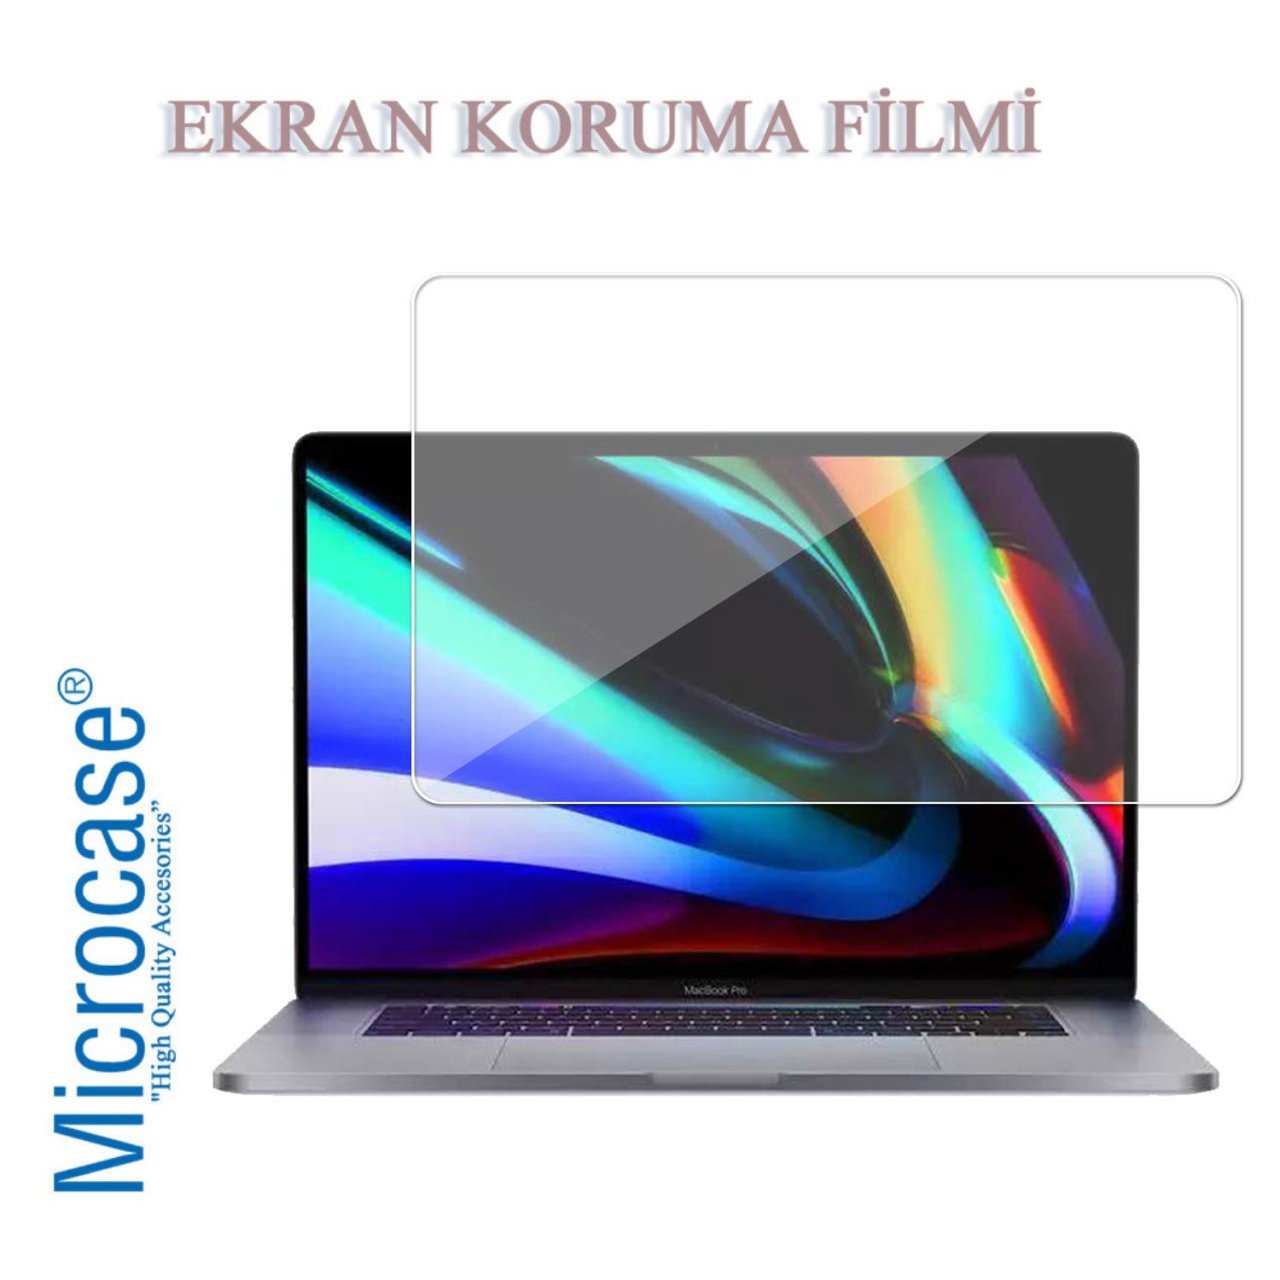 Microcase Macbook Pro 16 inch A2141 A2142 Ekran Koruyucu Film